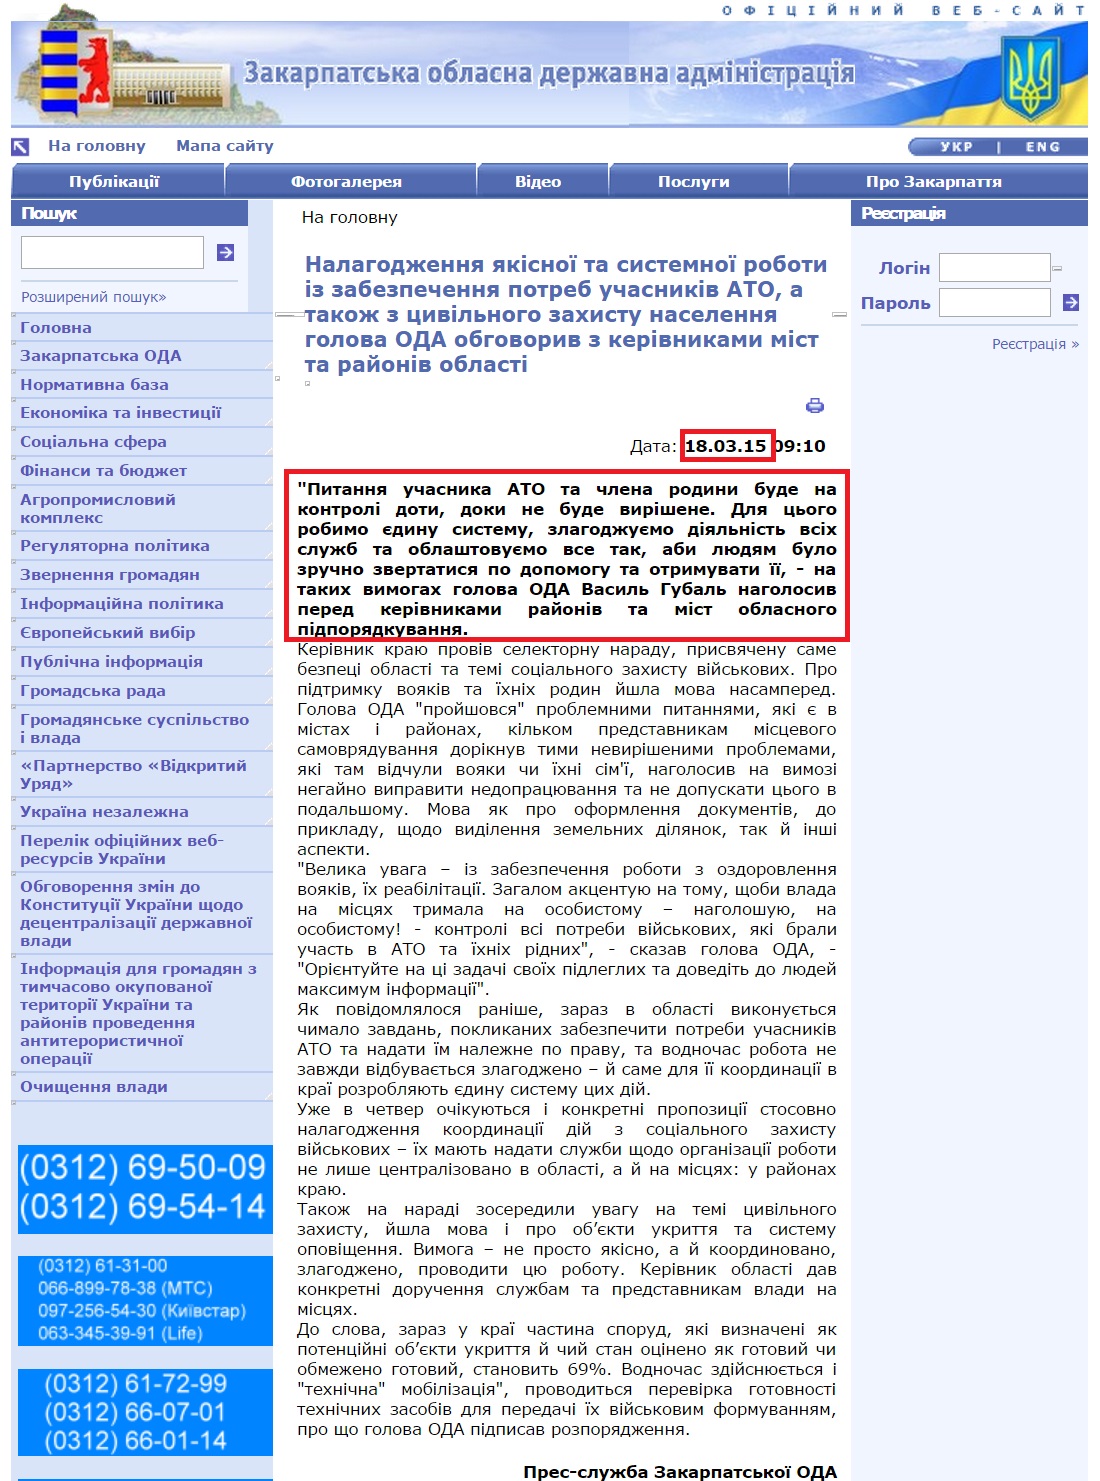 http://www.carpathia.gov.ua/ua/publication/content/10922.htm